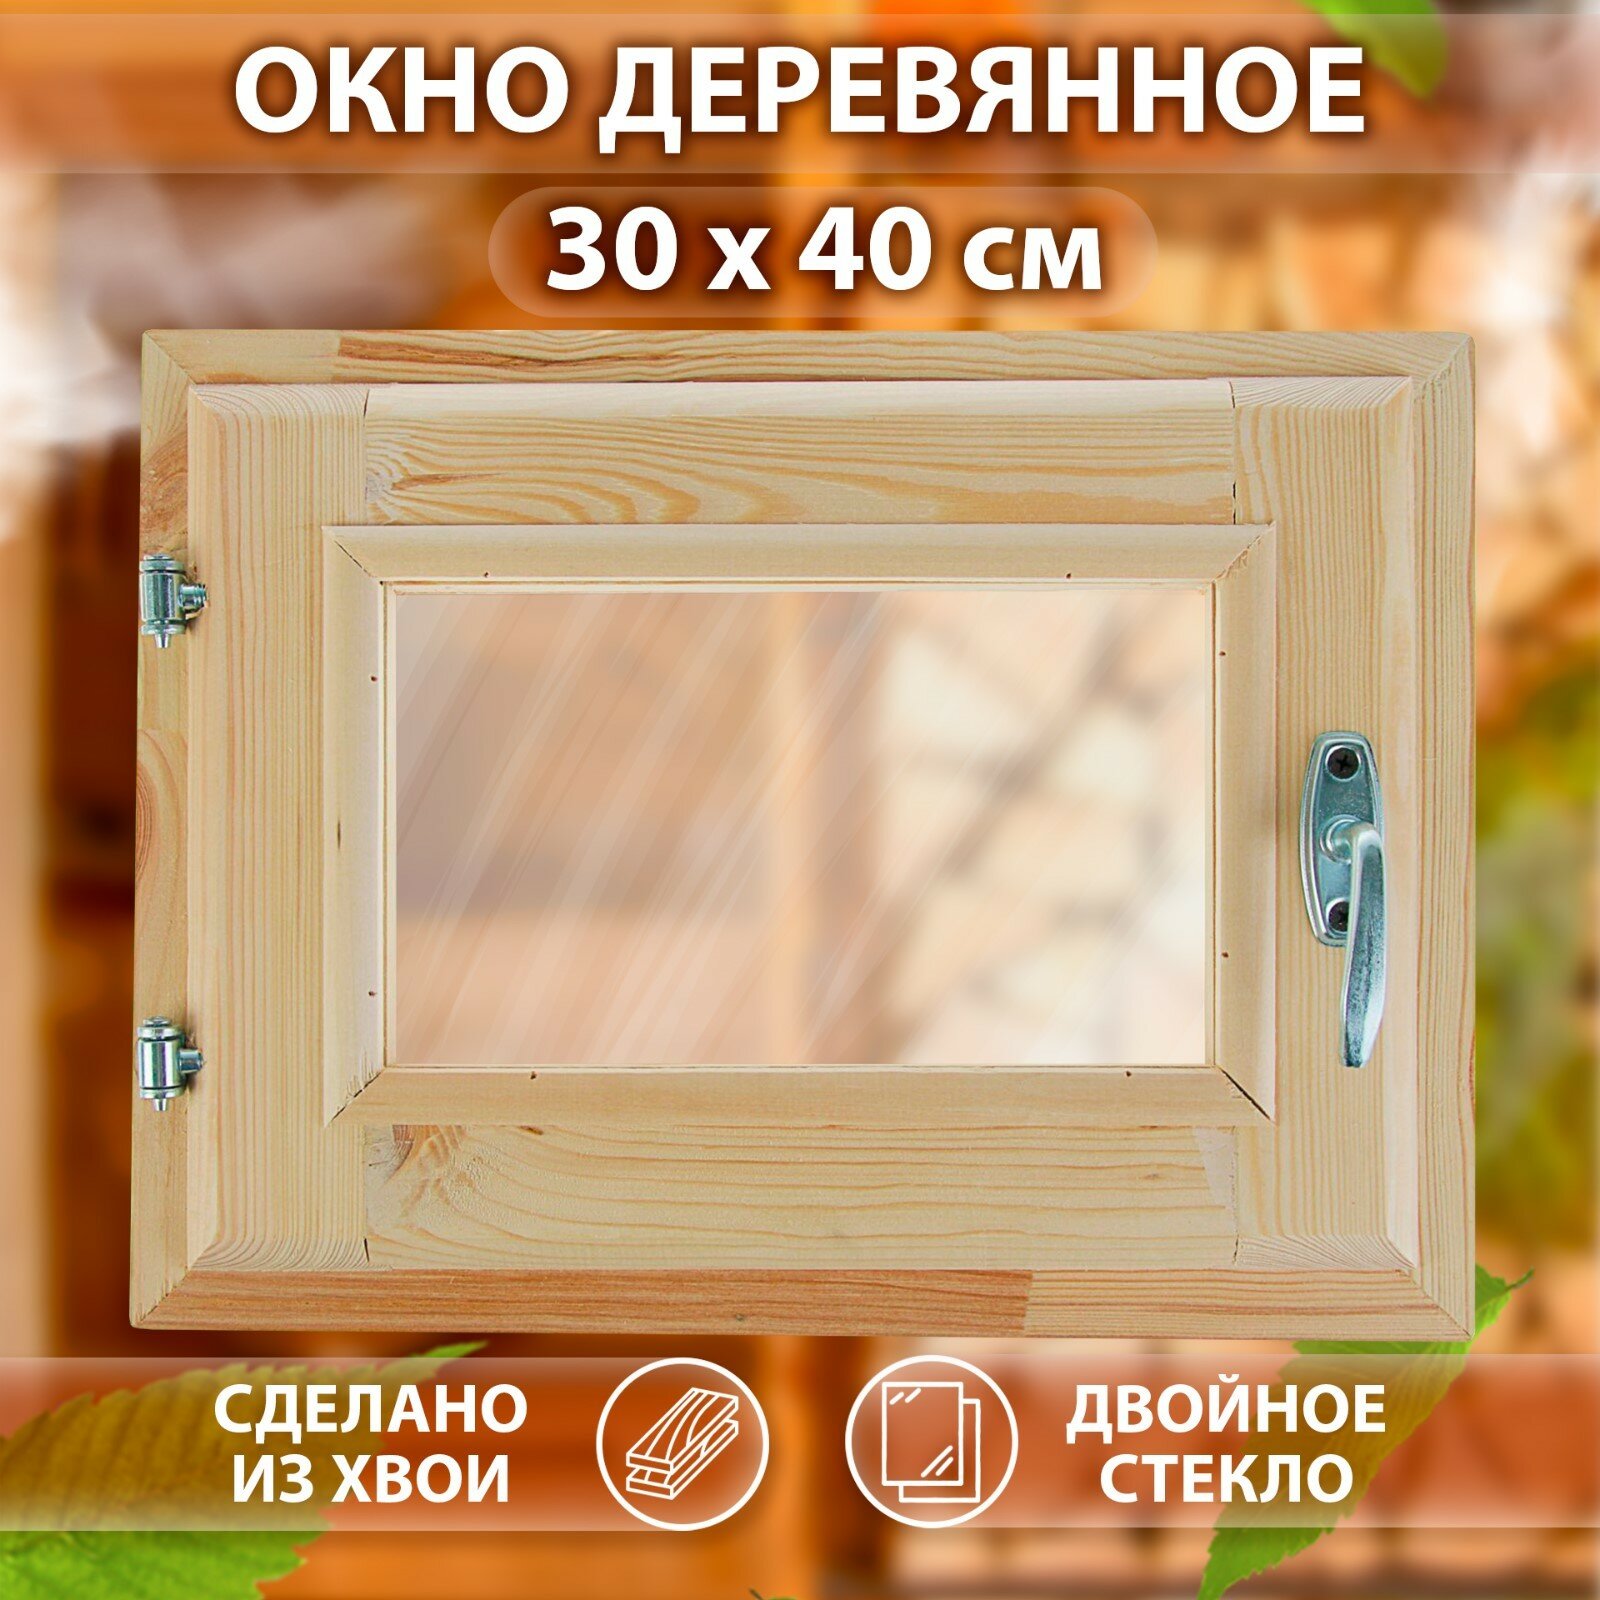 Окно, 30×40см, двойное стекло хвоя